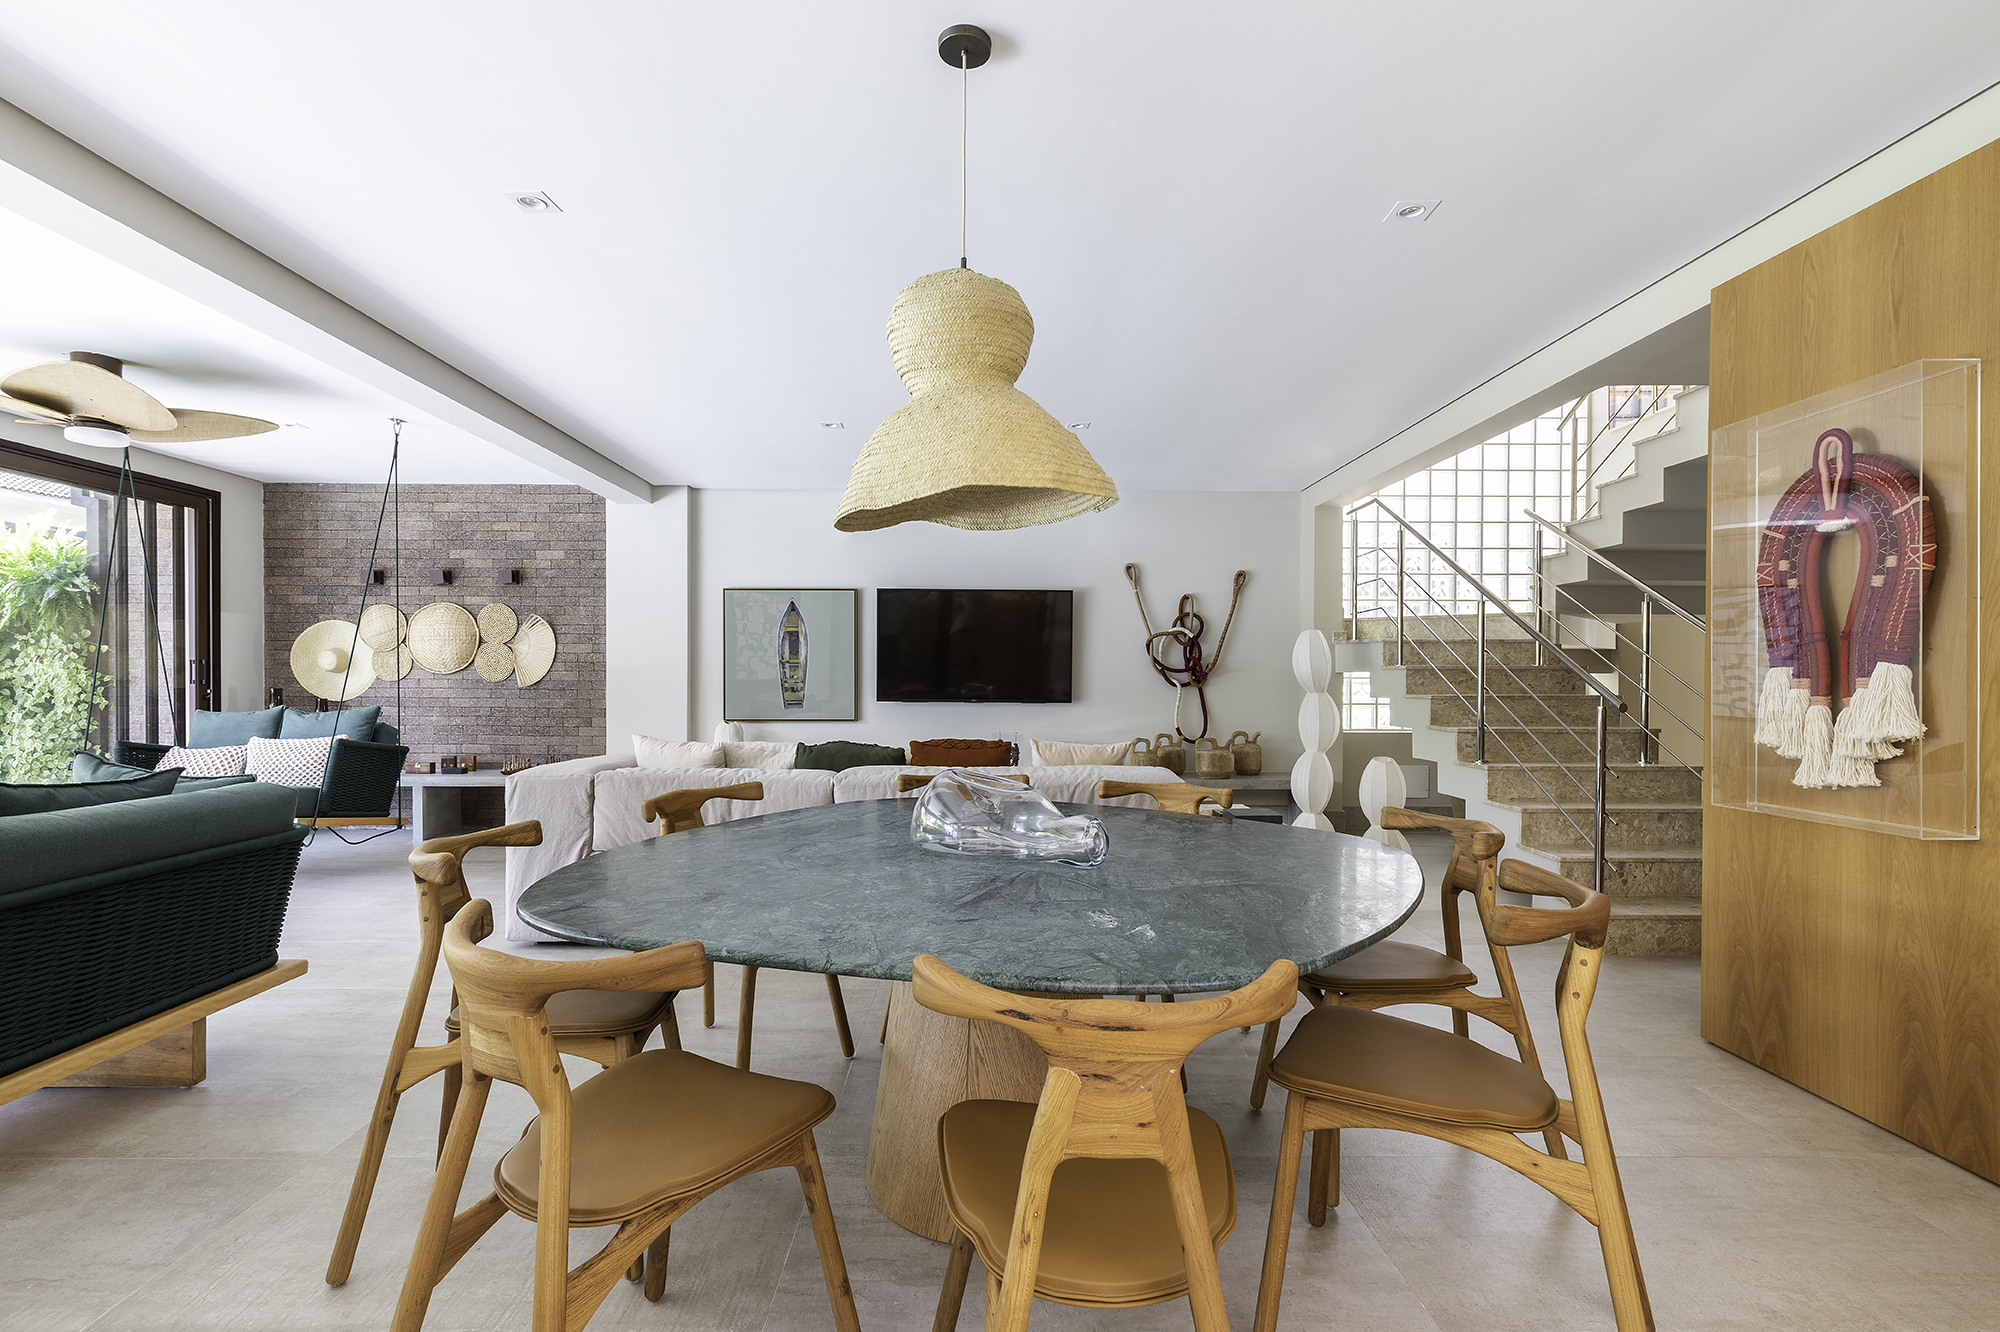 Materiais naturais e estilo praiano marcam esta casa de 500 m²